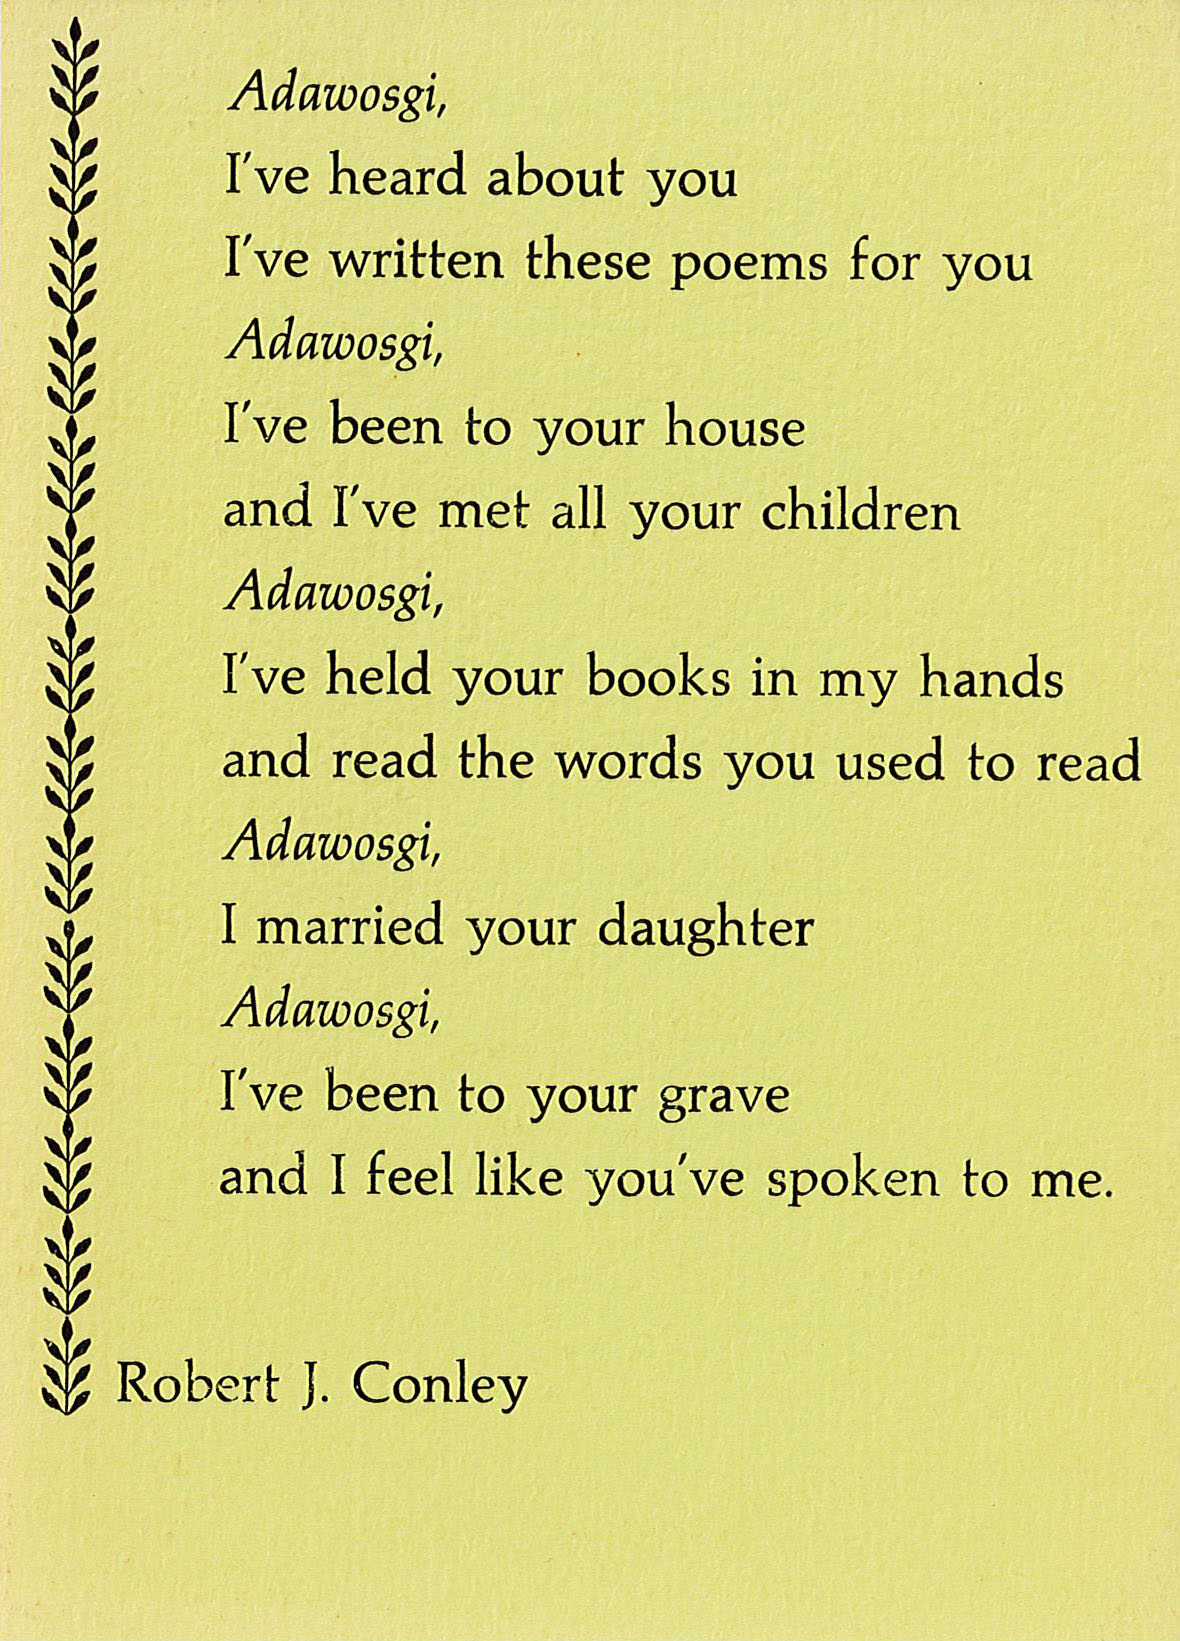 Poem card, “Adawosgi,” published by Strawberry Press, 1980